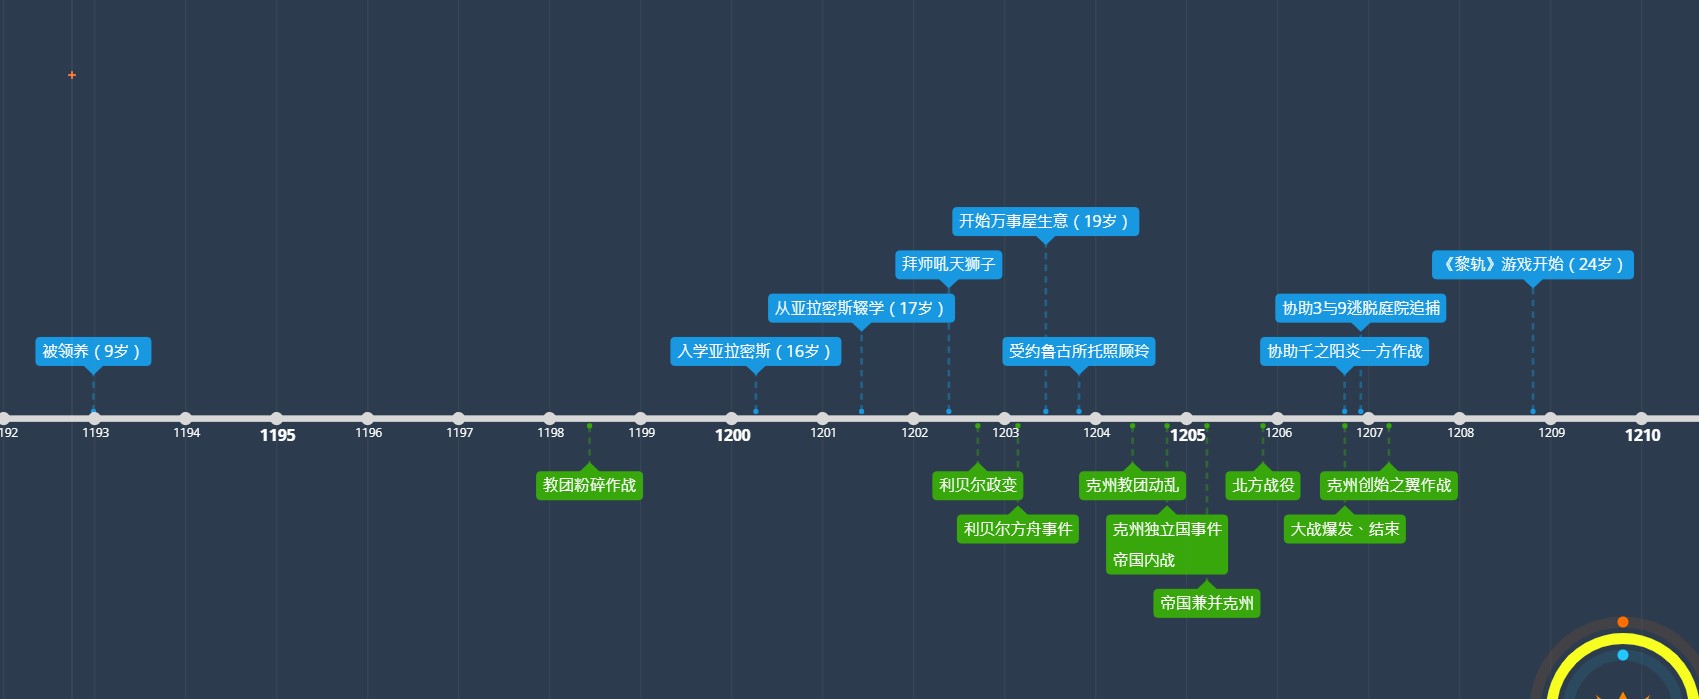 上方的蓝色方格为范恩的时间线，下方则《轨迹》系列中历史大事的时间线